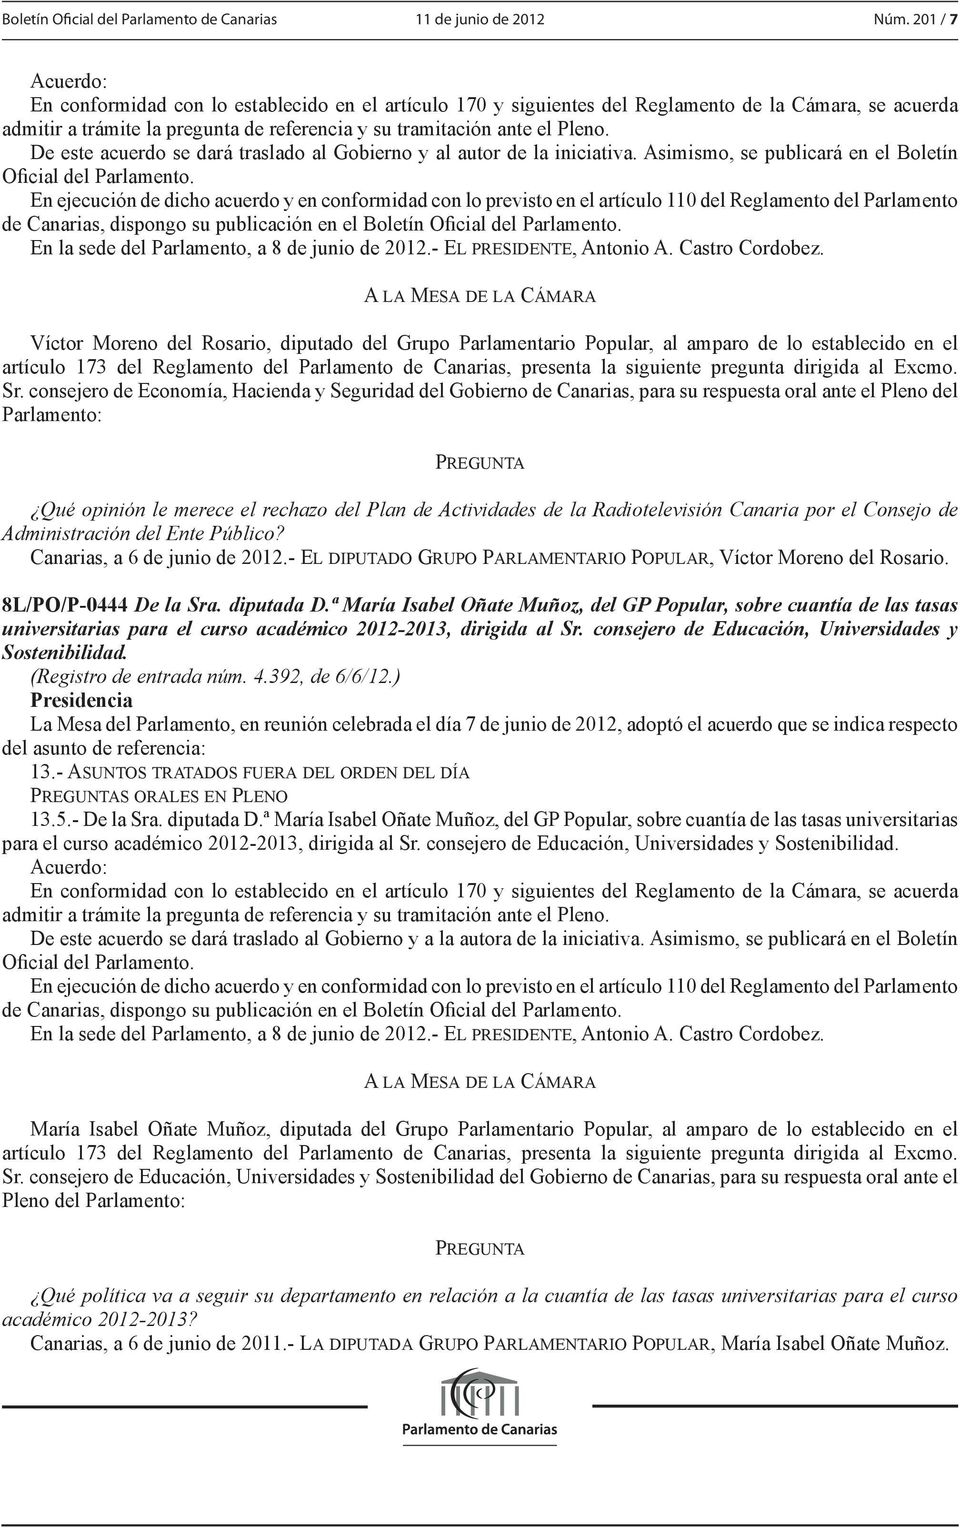 173 del Reglamento del Parlamento de Canarias, presenta la siguiente pregunta dirigida al Excmo. Sr.